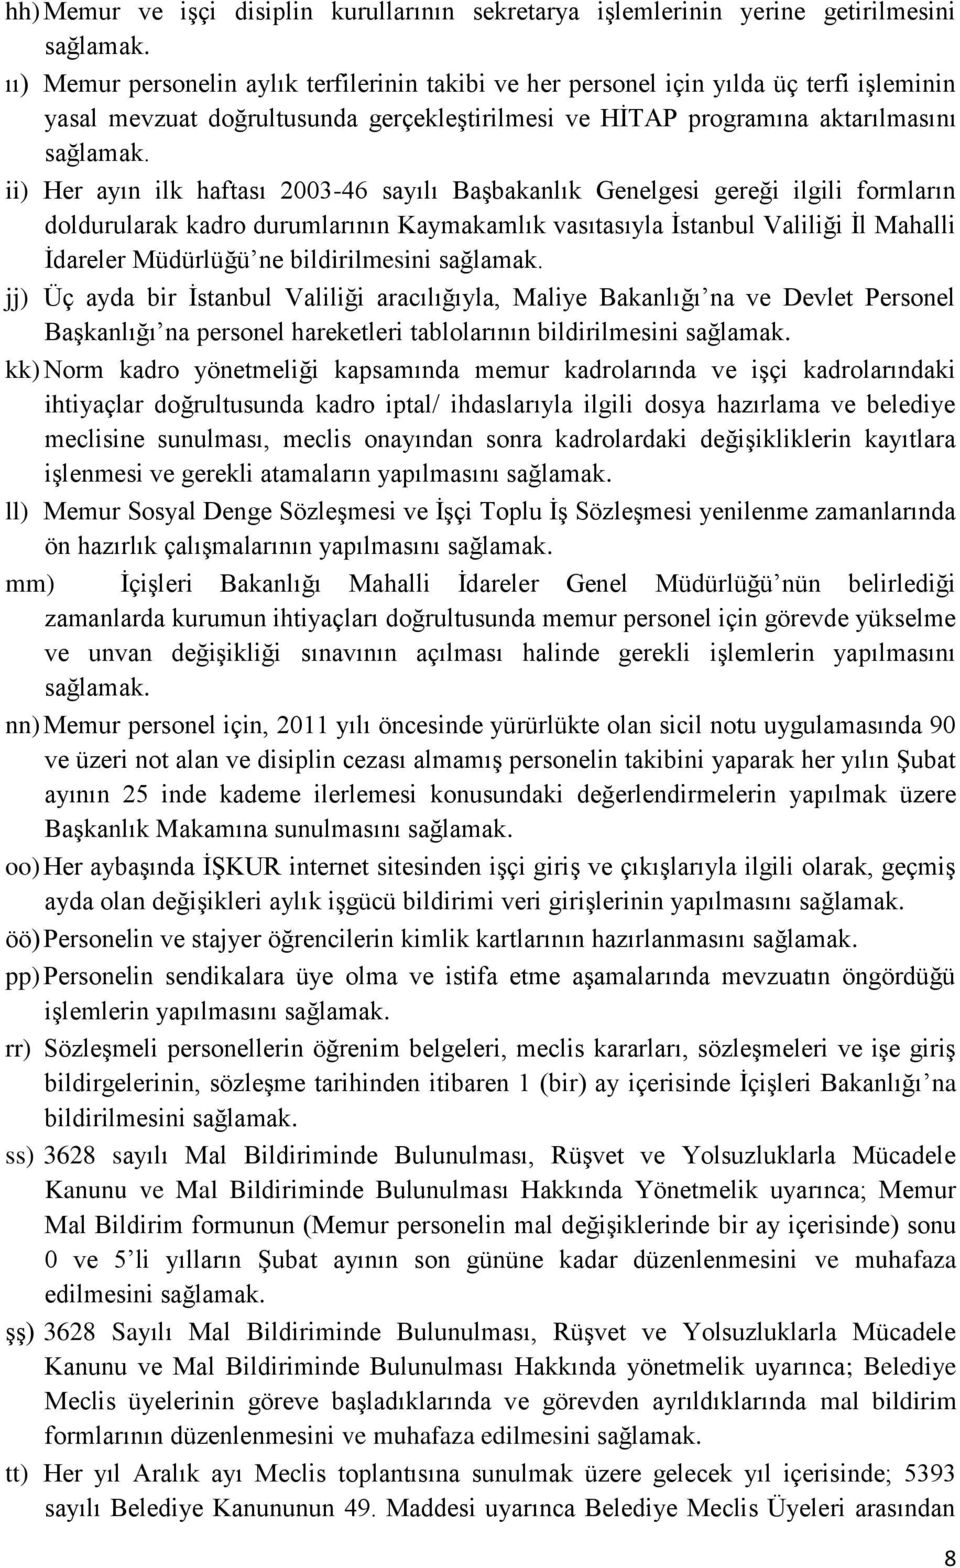 vasıtasıyla İstanbul Valiliği İl Mahalli İdareler Müdürlüğü ne bildirilmesini jj) Üç ayda bir İstanbul Valiliği aracılığıyla, Maliye Bakanlığı na ve Devlet Personel Başkanlığı na personel hareketleri